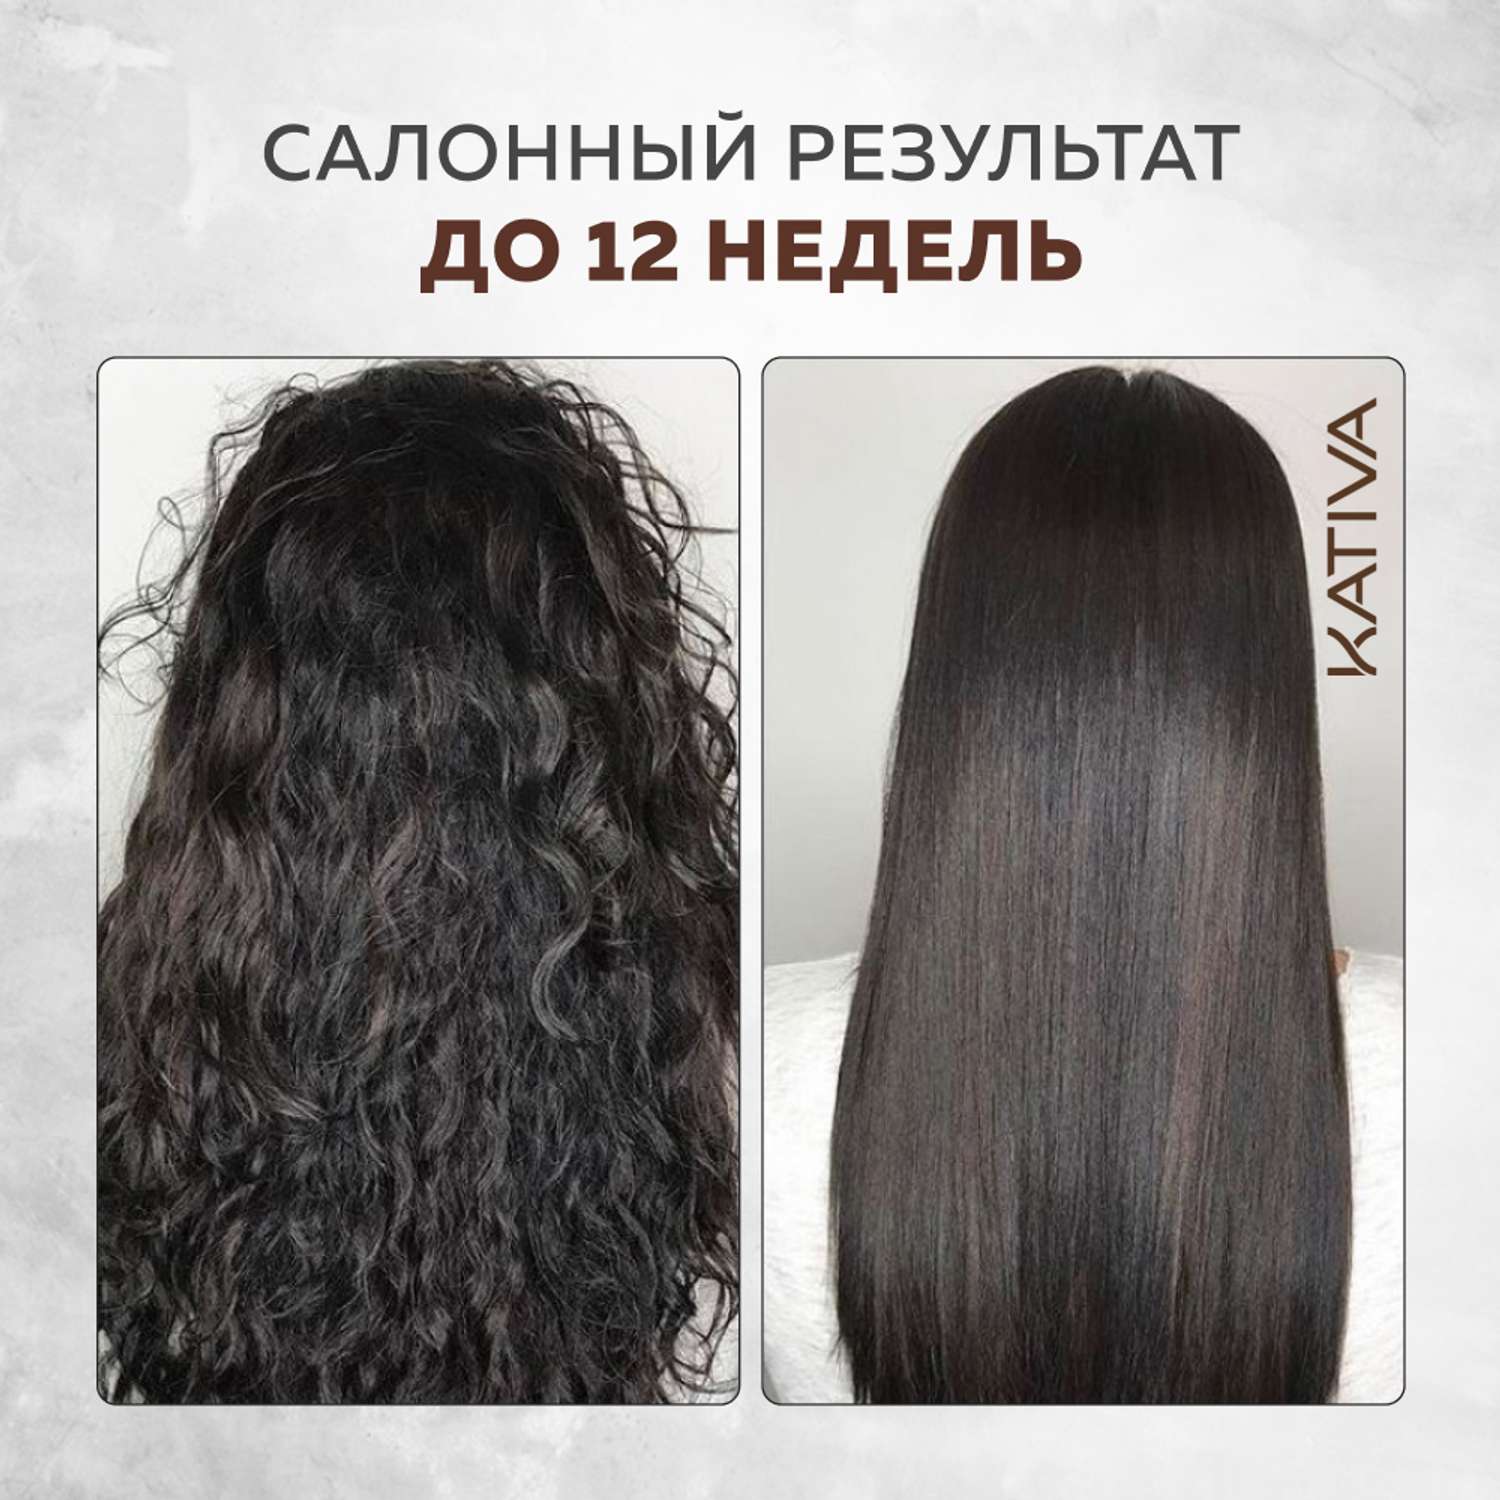 Набор для выпрямления Kativa кератинового и восстановления волос с маслом Арганы - фото 5